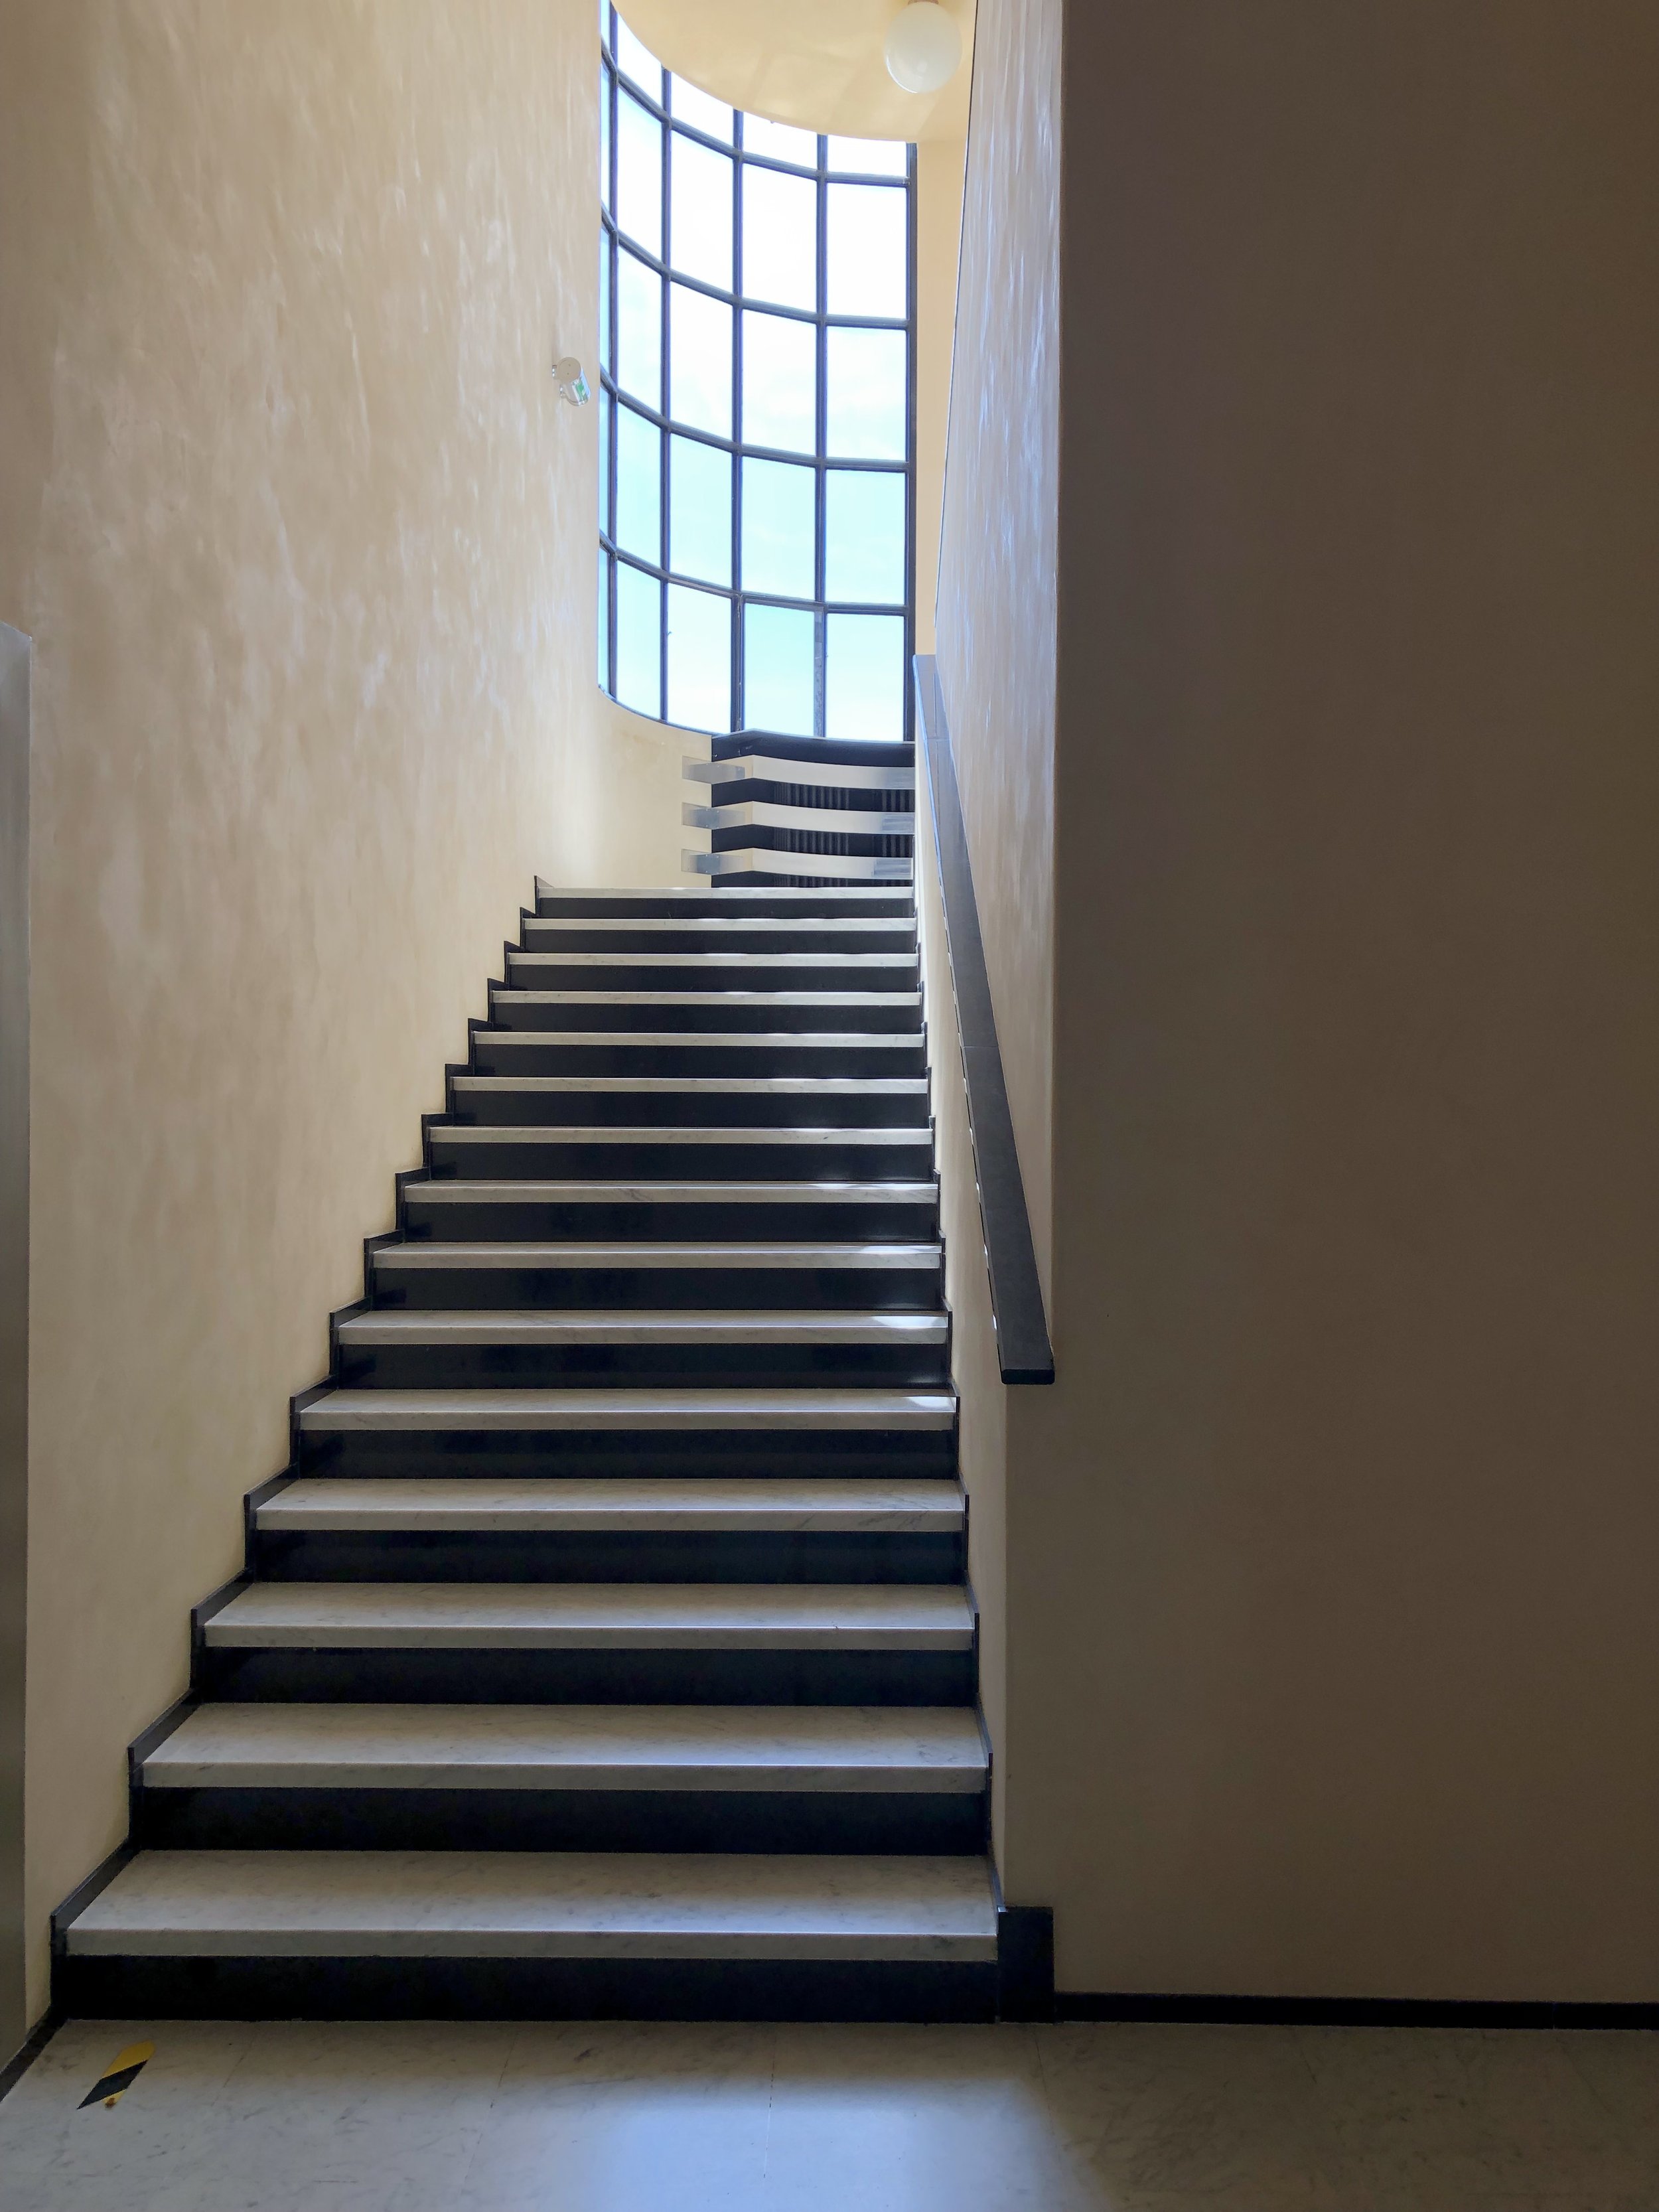 Architecture intérieur villa cavrois la escalier.jpg